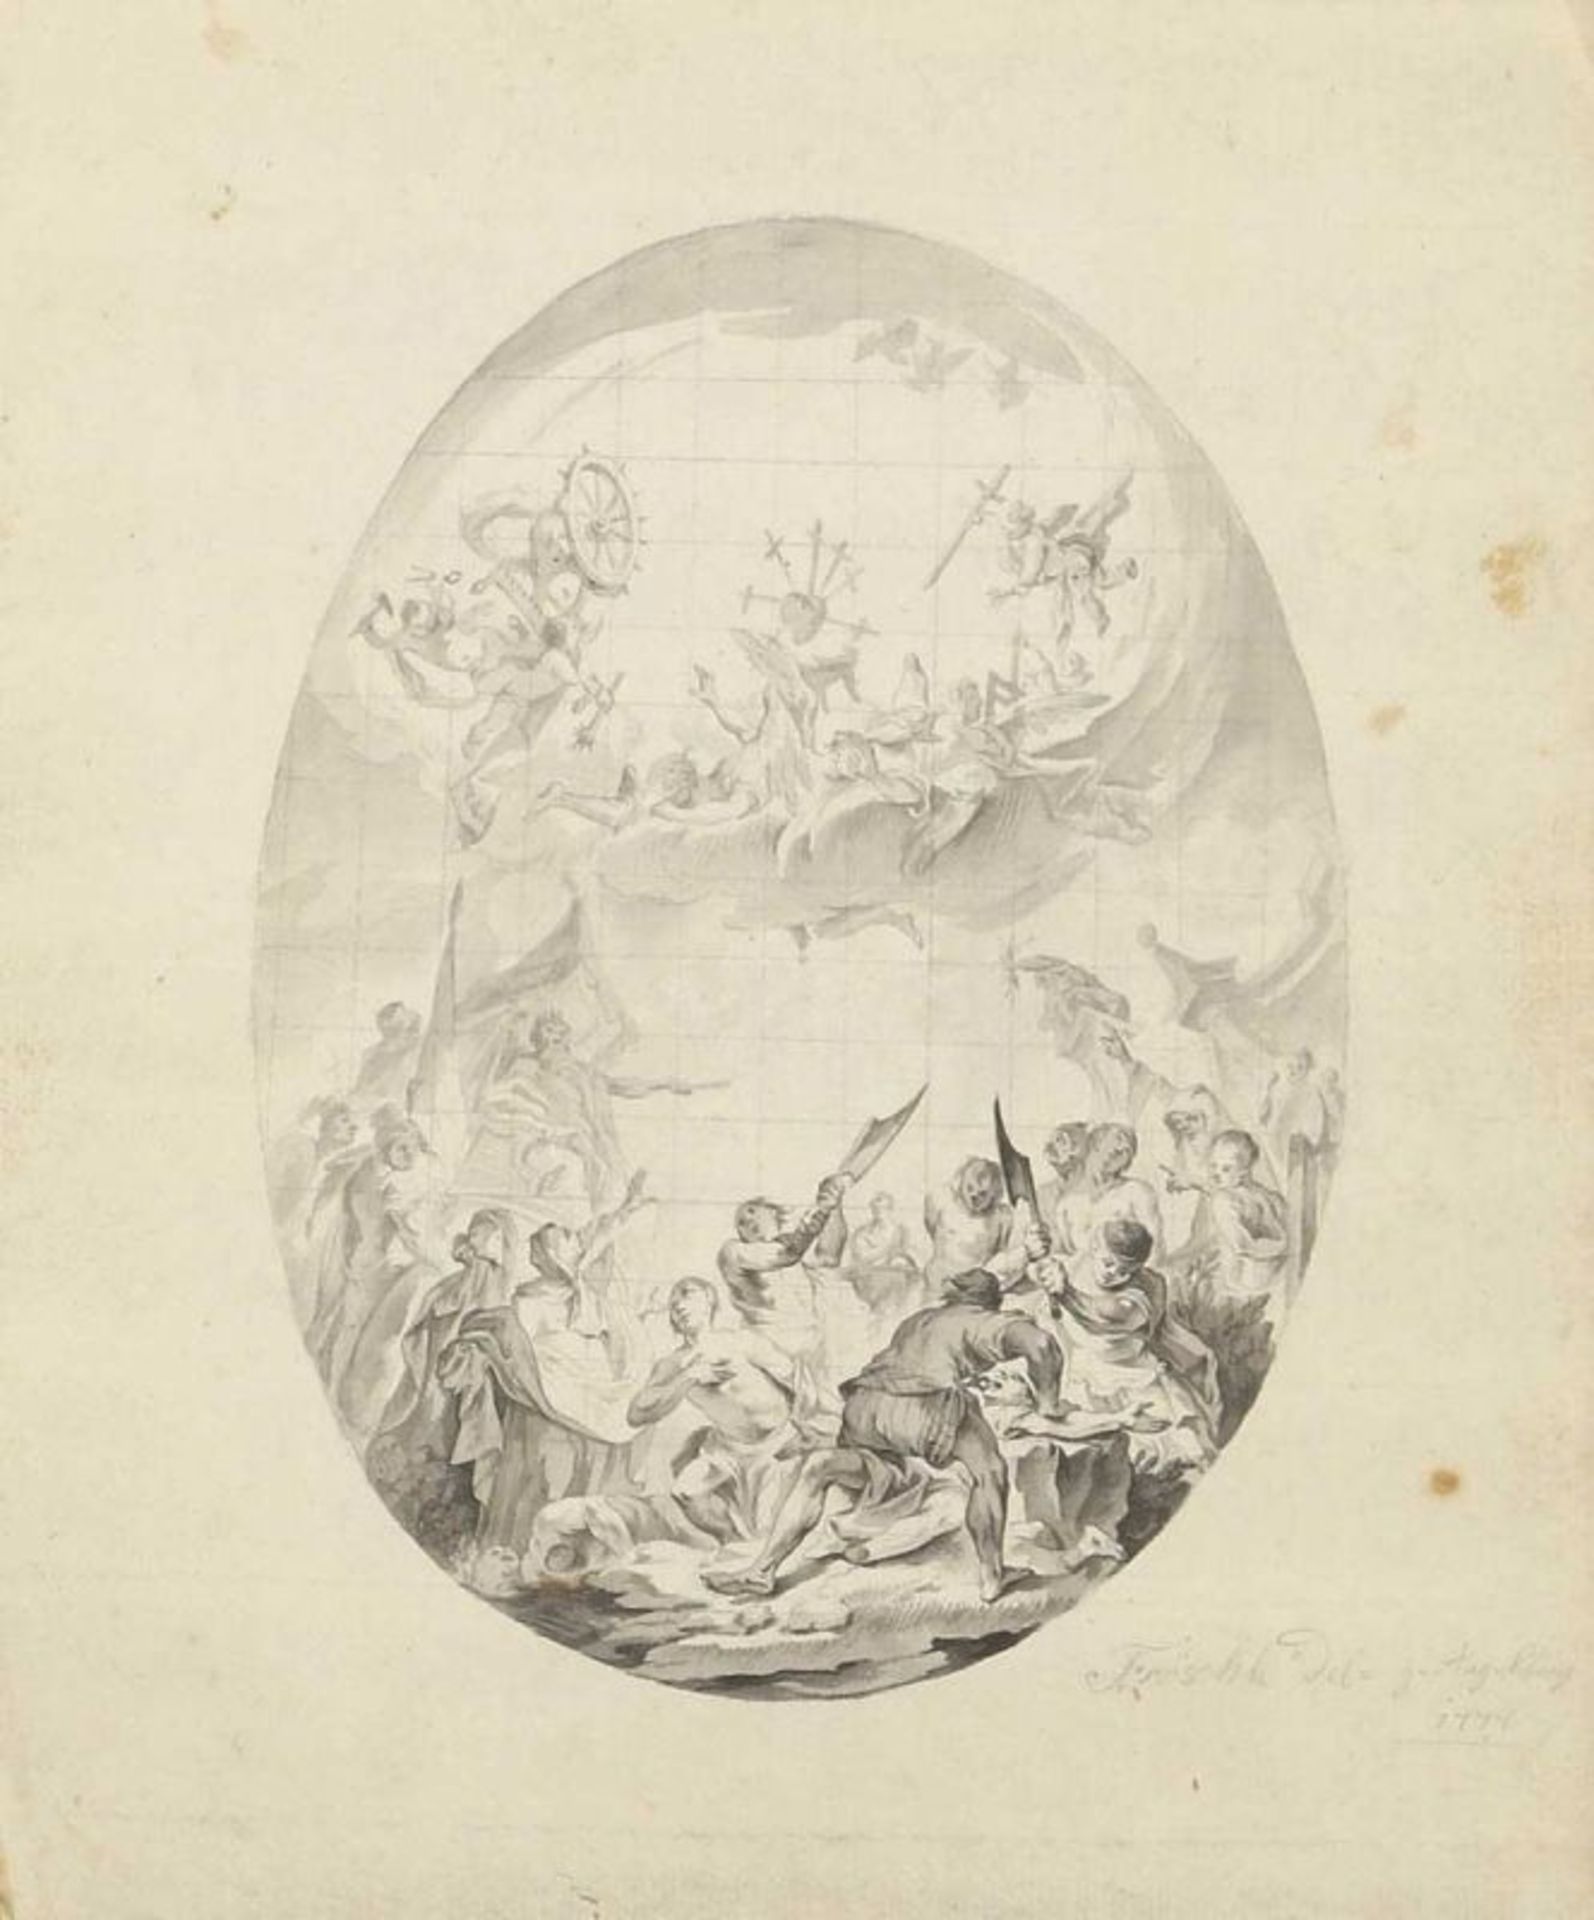 Jacob Fröschle 1742 Krumbach - 1782 Krumbach - "Das Martyrium der Heiligen Felizitas mit ihren